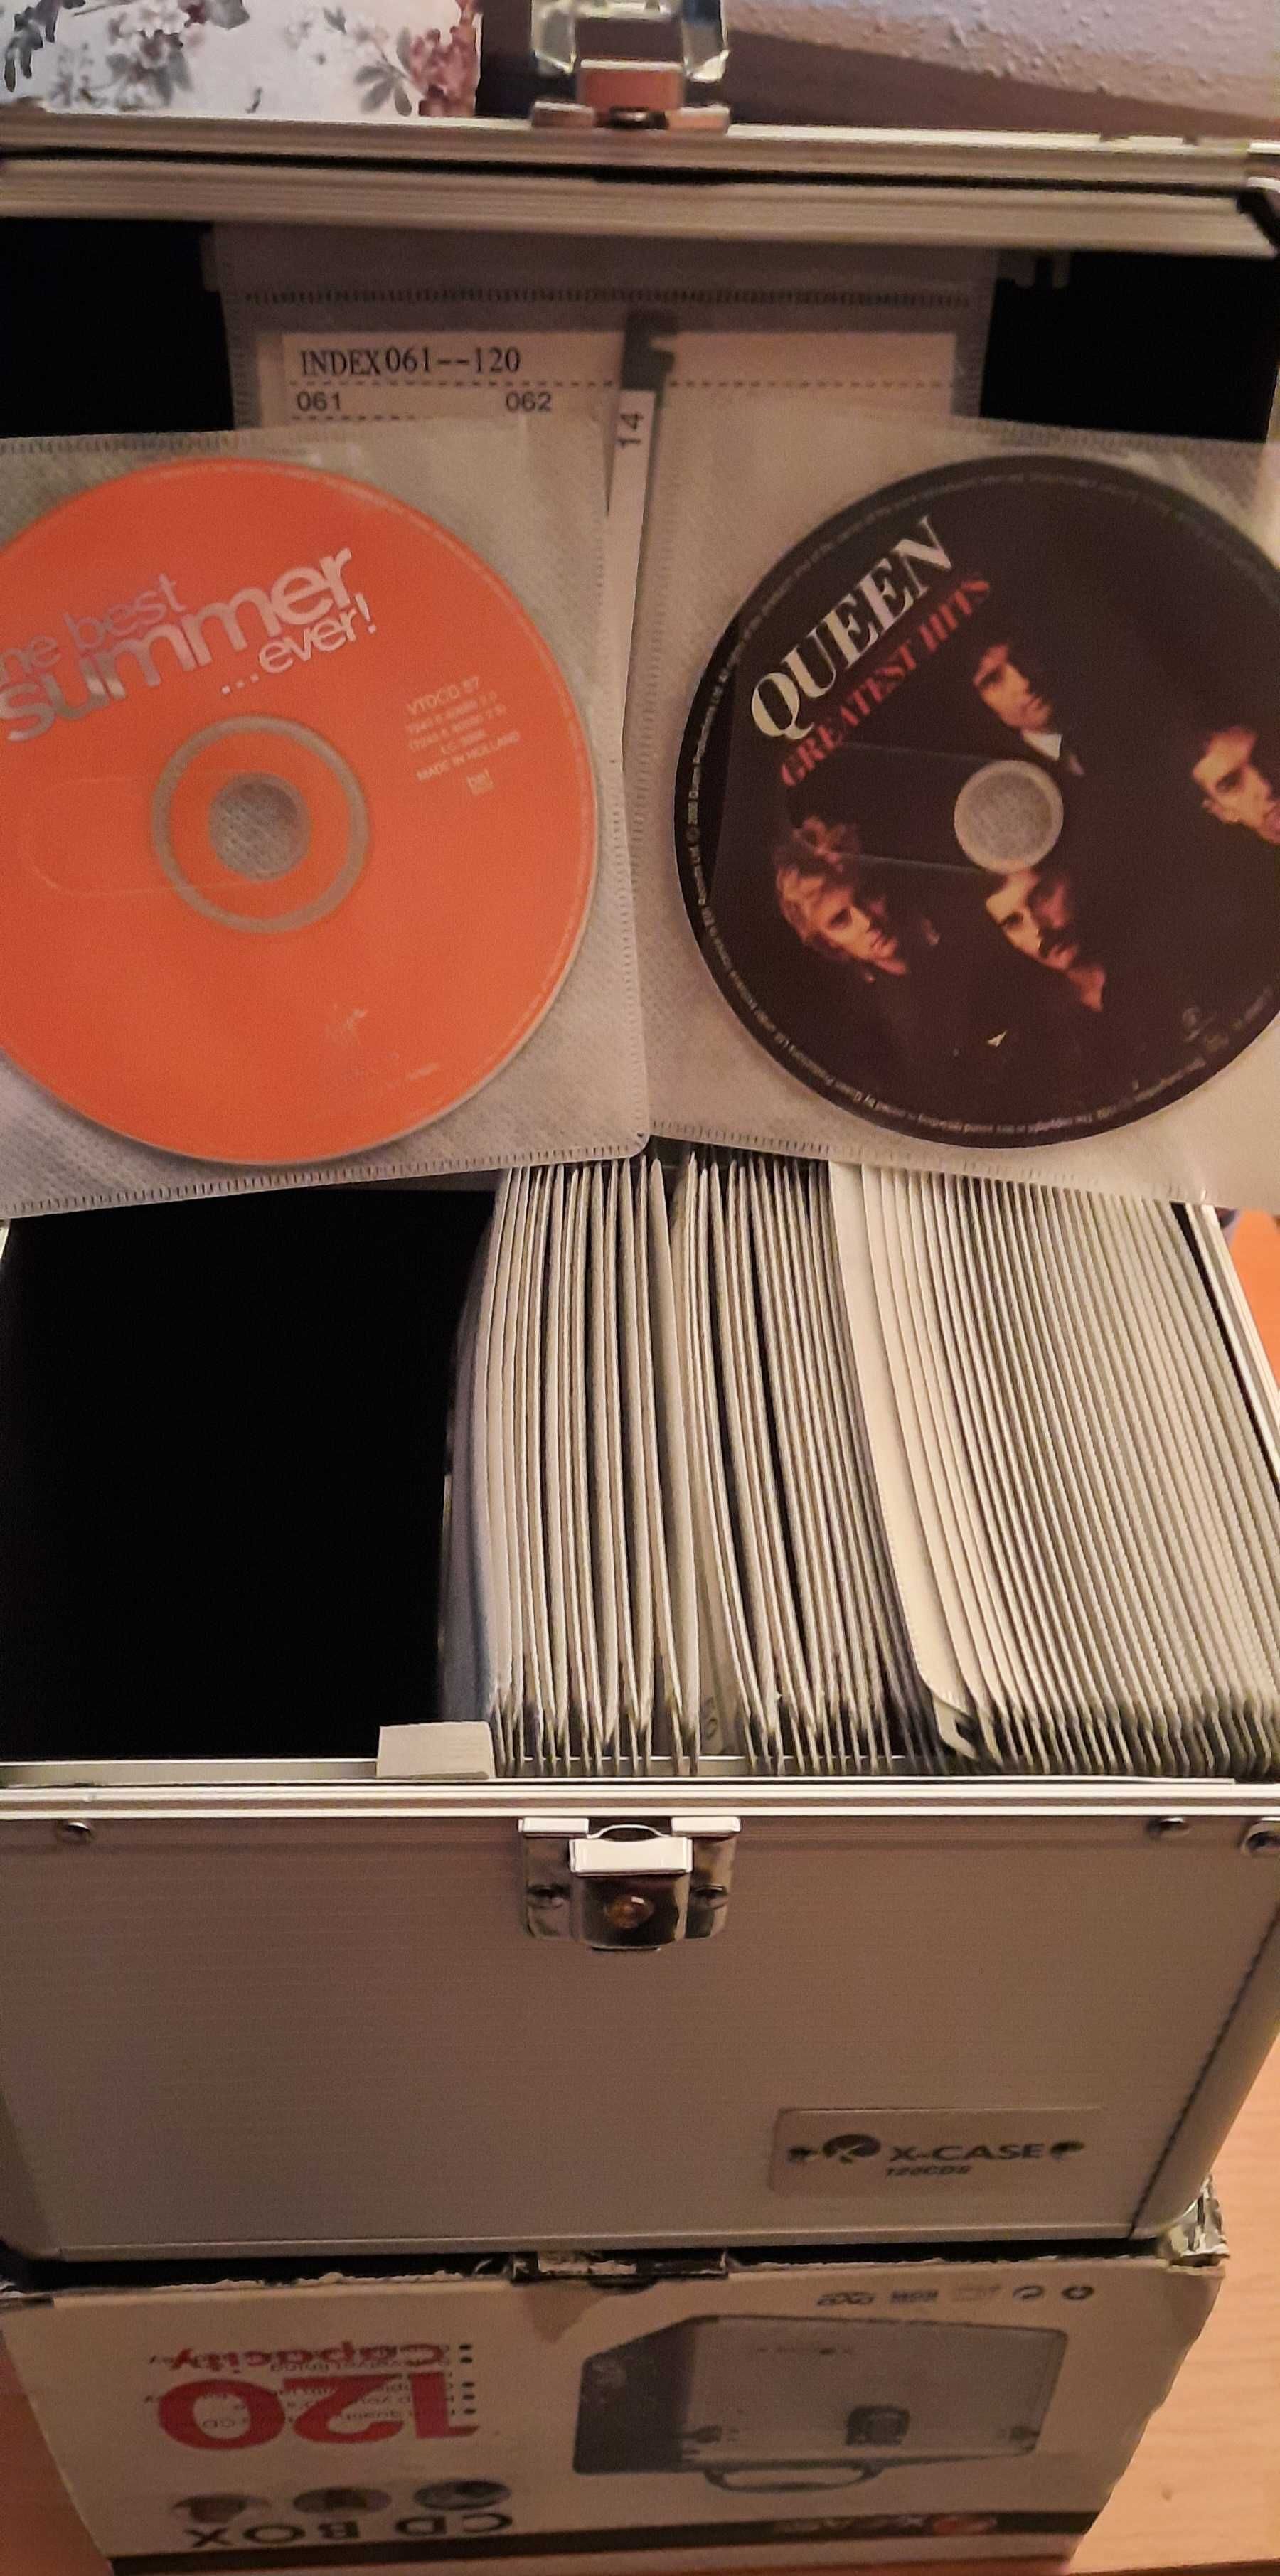 Vand caseta metalica noua capacitate 120 CD cu CD uri Originale